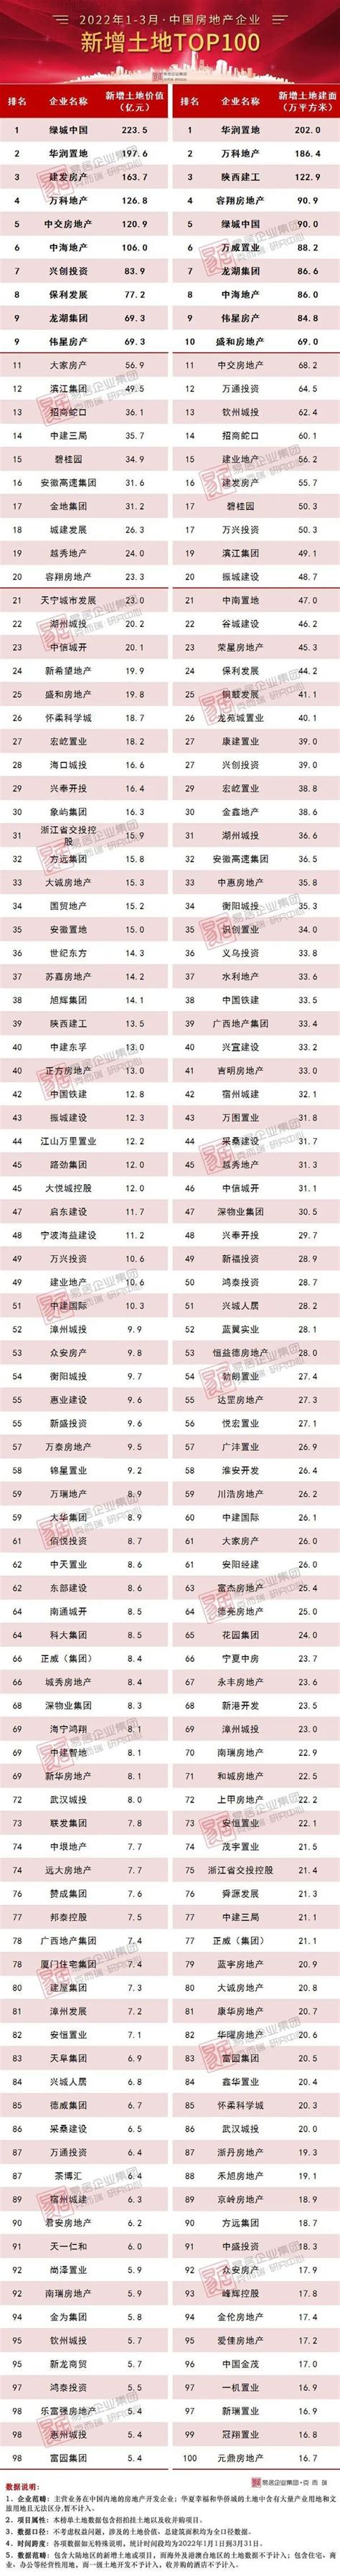 [克而瑞]2022年1-3月中国房地产企业新增货值TOP100排行榜 - 贵阳市房地产业协会